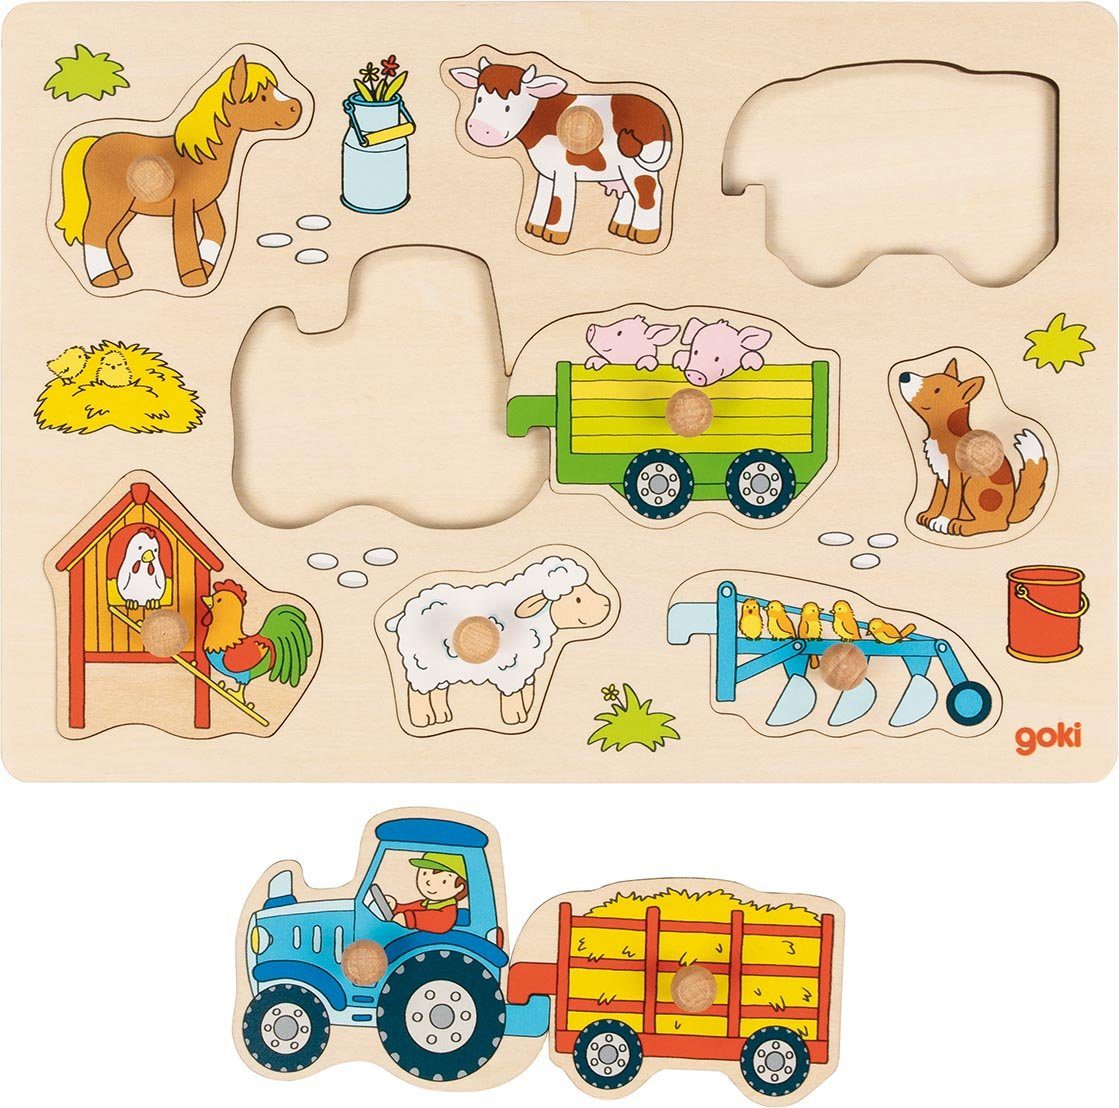 goki Steckpuzzle verbinden mit Anhänger lassen ausserhalb 9 auch Puzzleteile, Holz-Steckpuzzle Puzzles Anhängern sich Traktor Puzzle, Traktor und des